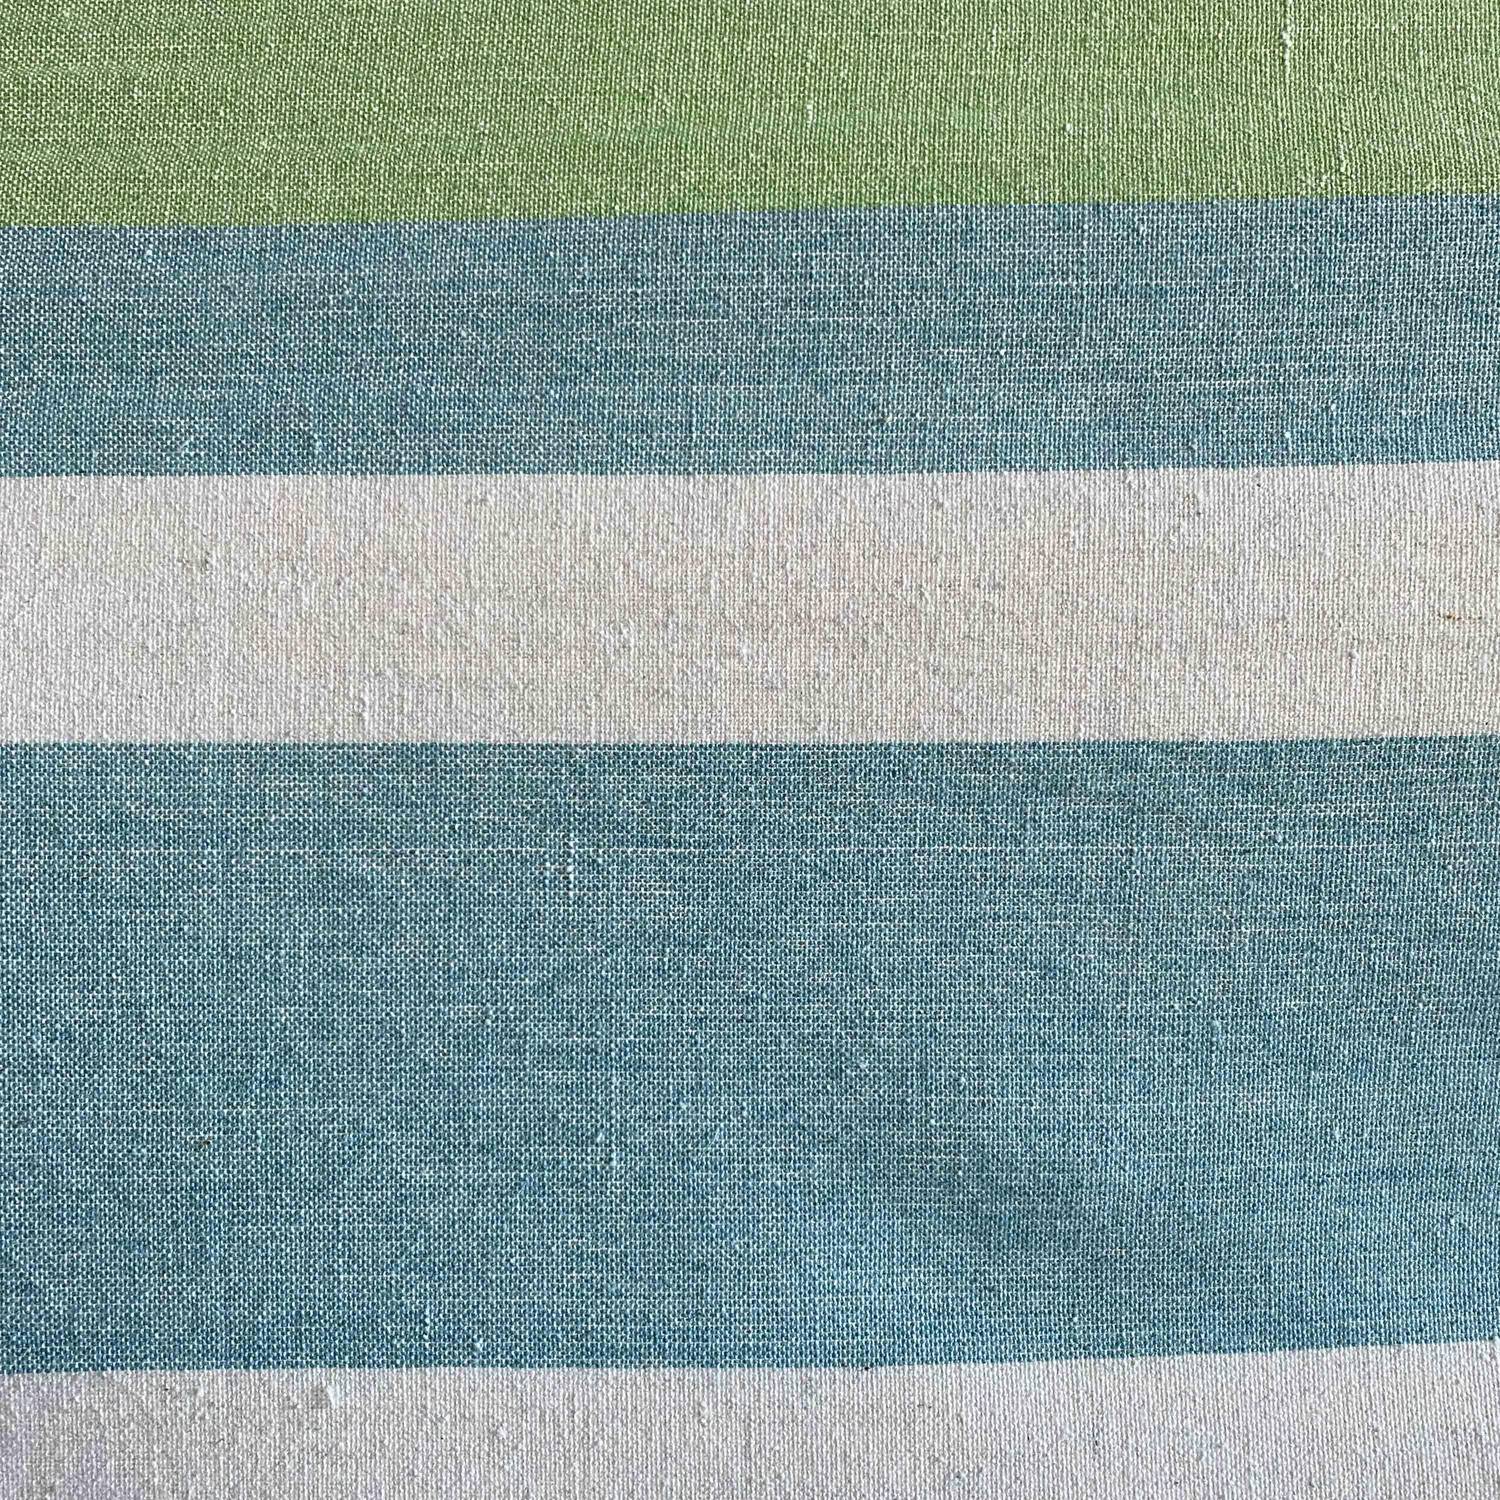 Hängemattenbezug für 1 Person, 100% Baumwolle, 110 x 220 cm, blau und grün gestreift, mit Seilen und Karabinern Photo2